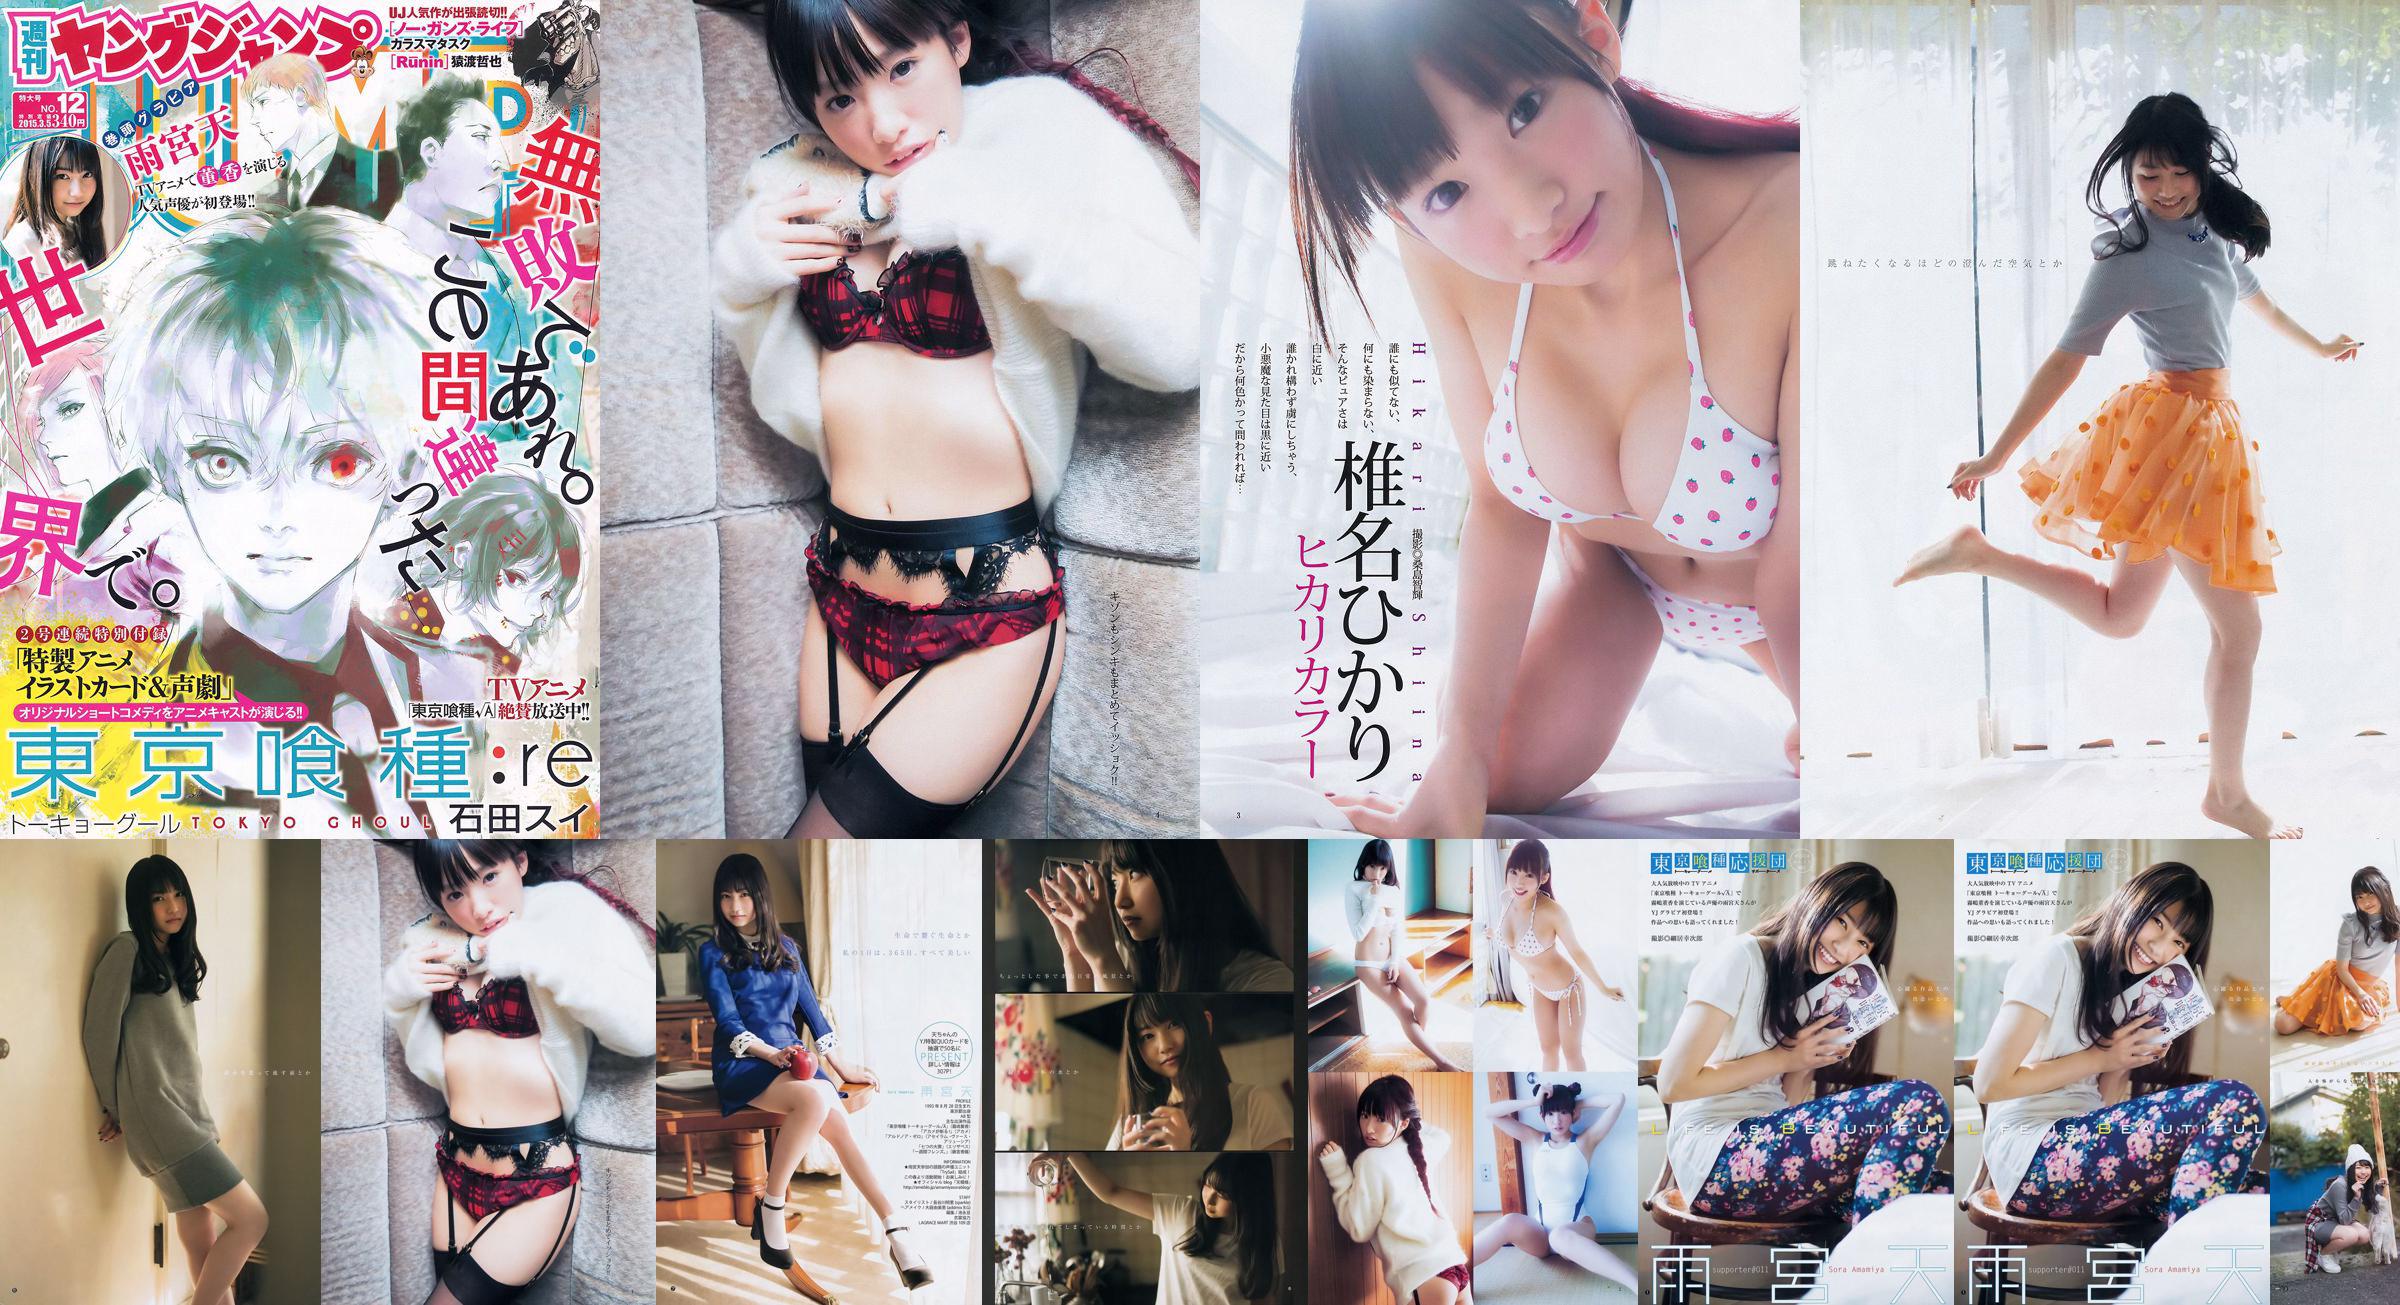 雨宮天 椎名ひかり [Weekly Young Jump] 2015年No.12 写真杂志 No.3f450e 第2頁